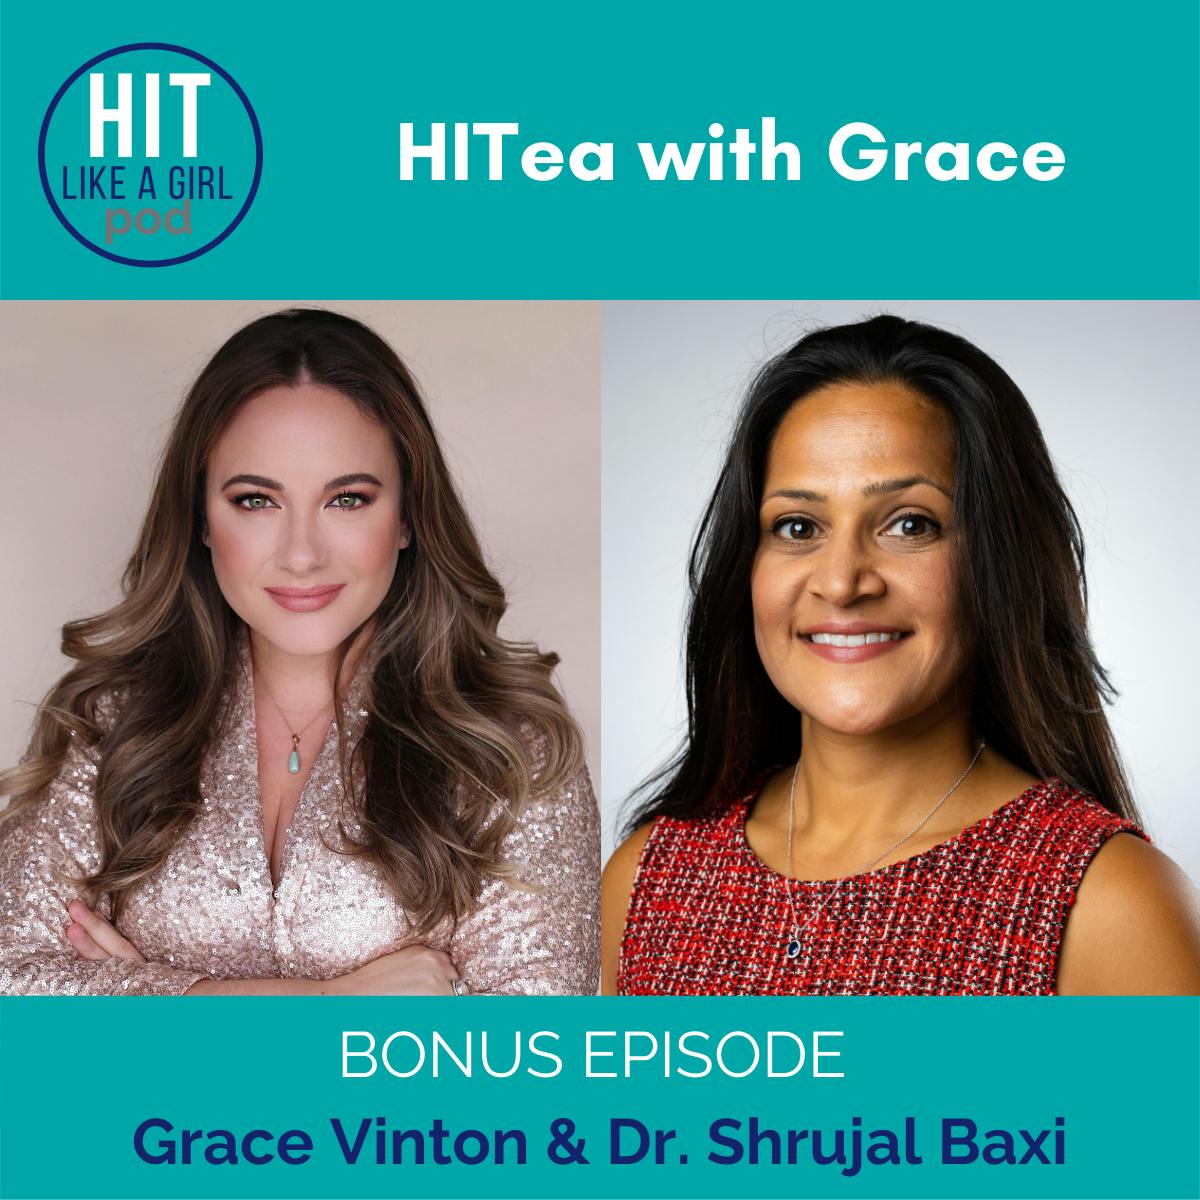 HITea with Grace: Grace Vinton interviews Dr. Shrujal Baxi